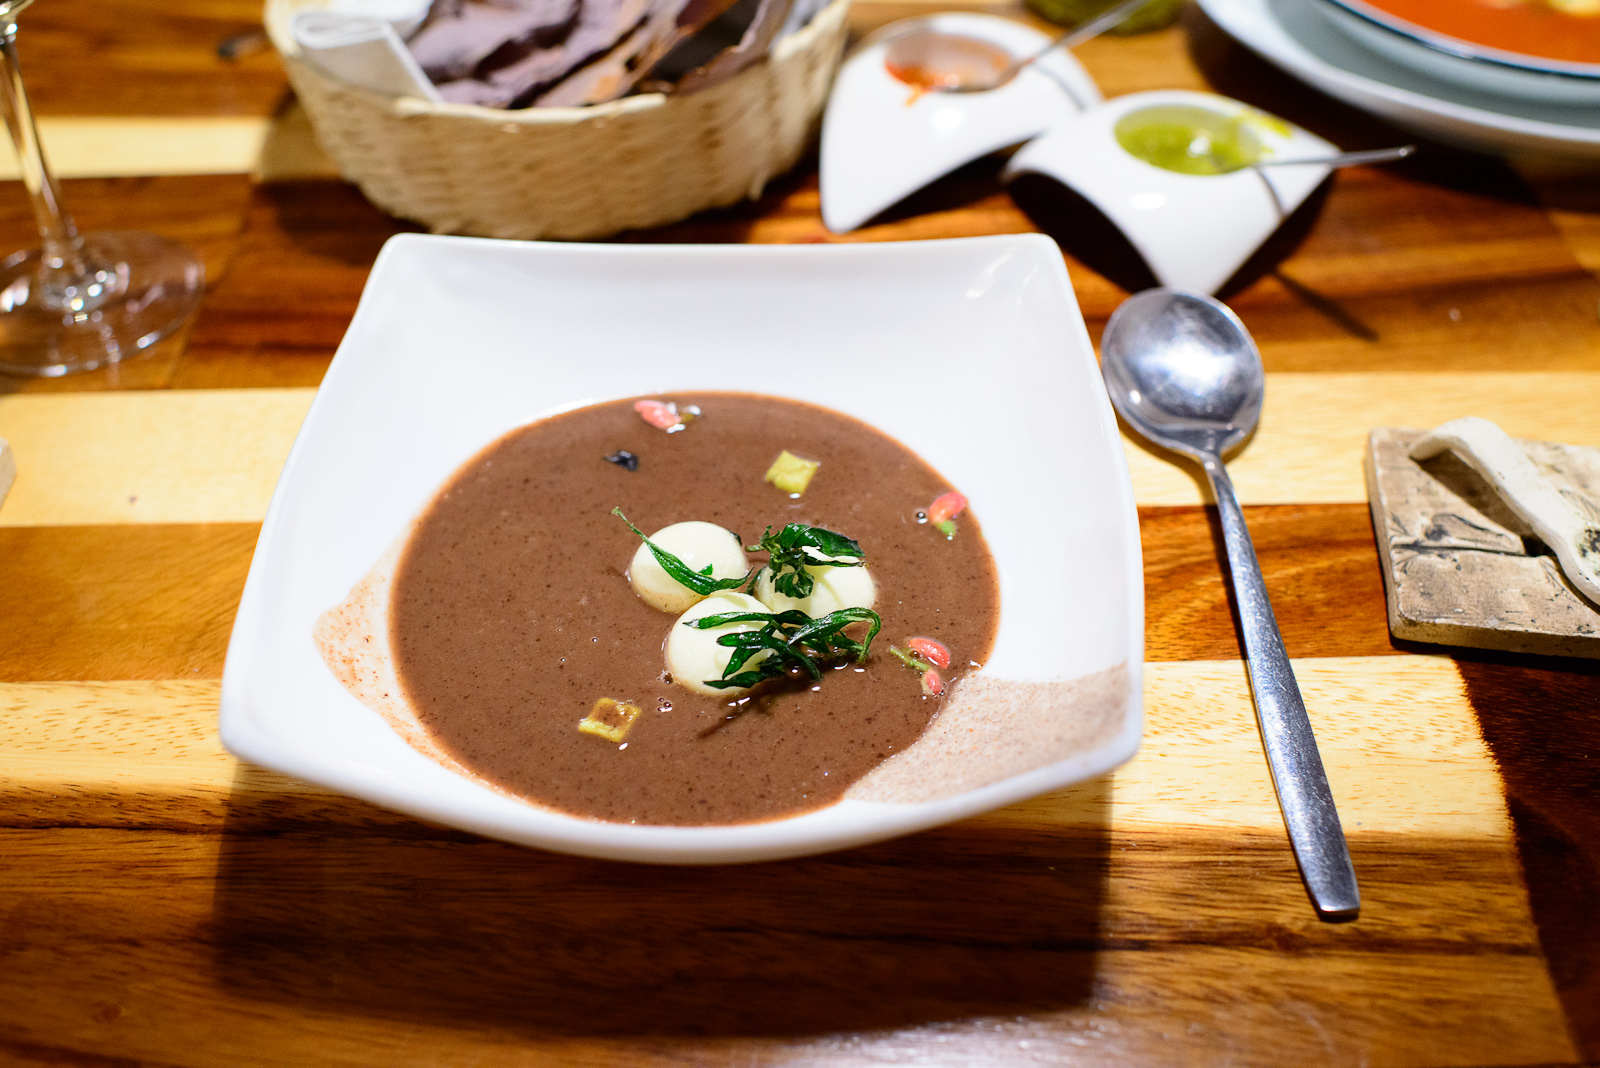 3rd Course: Bean soup - Avocado, "hierba de conejo" Zapotec herb